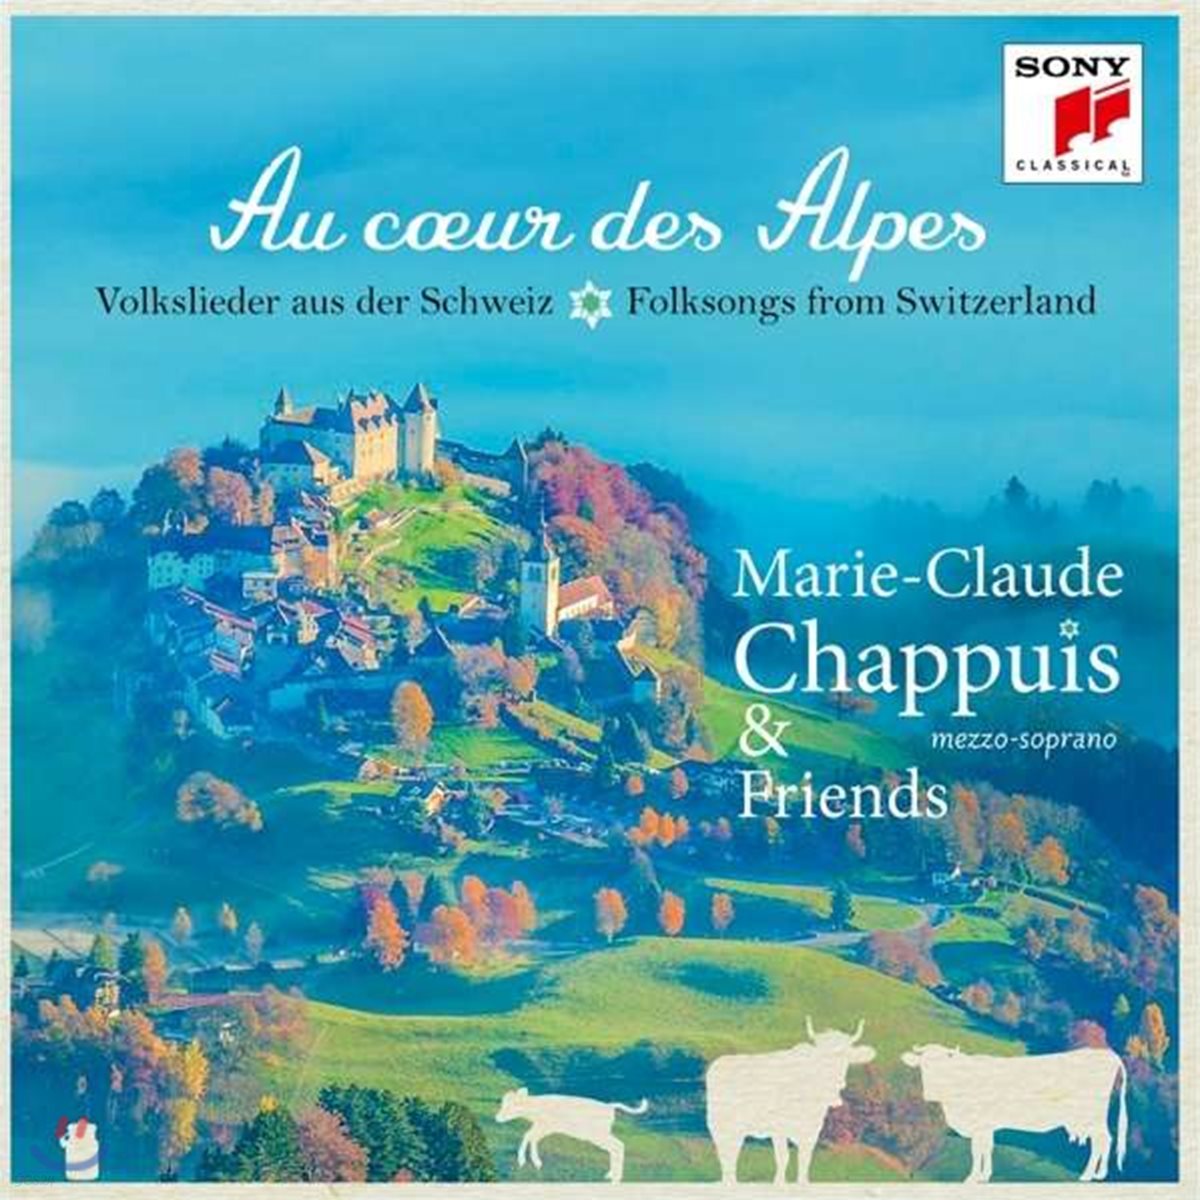 Marie-Claude Chappuis '알프스의 중심에서' - 스위스 민요와 가곡집 (Au coeur des Alpes)